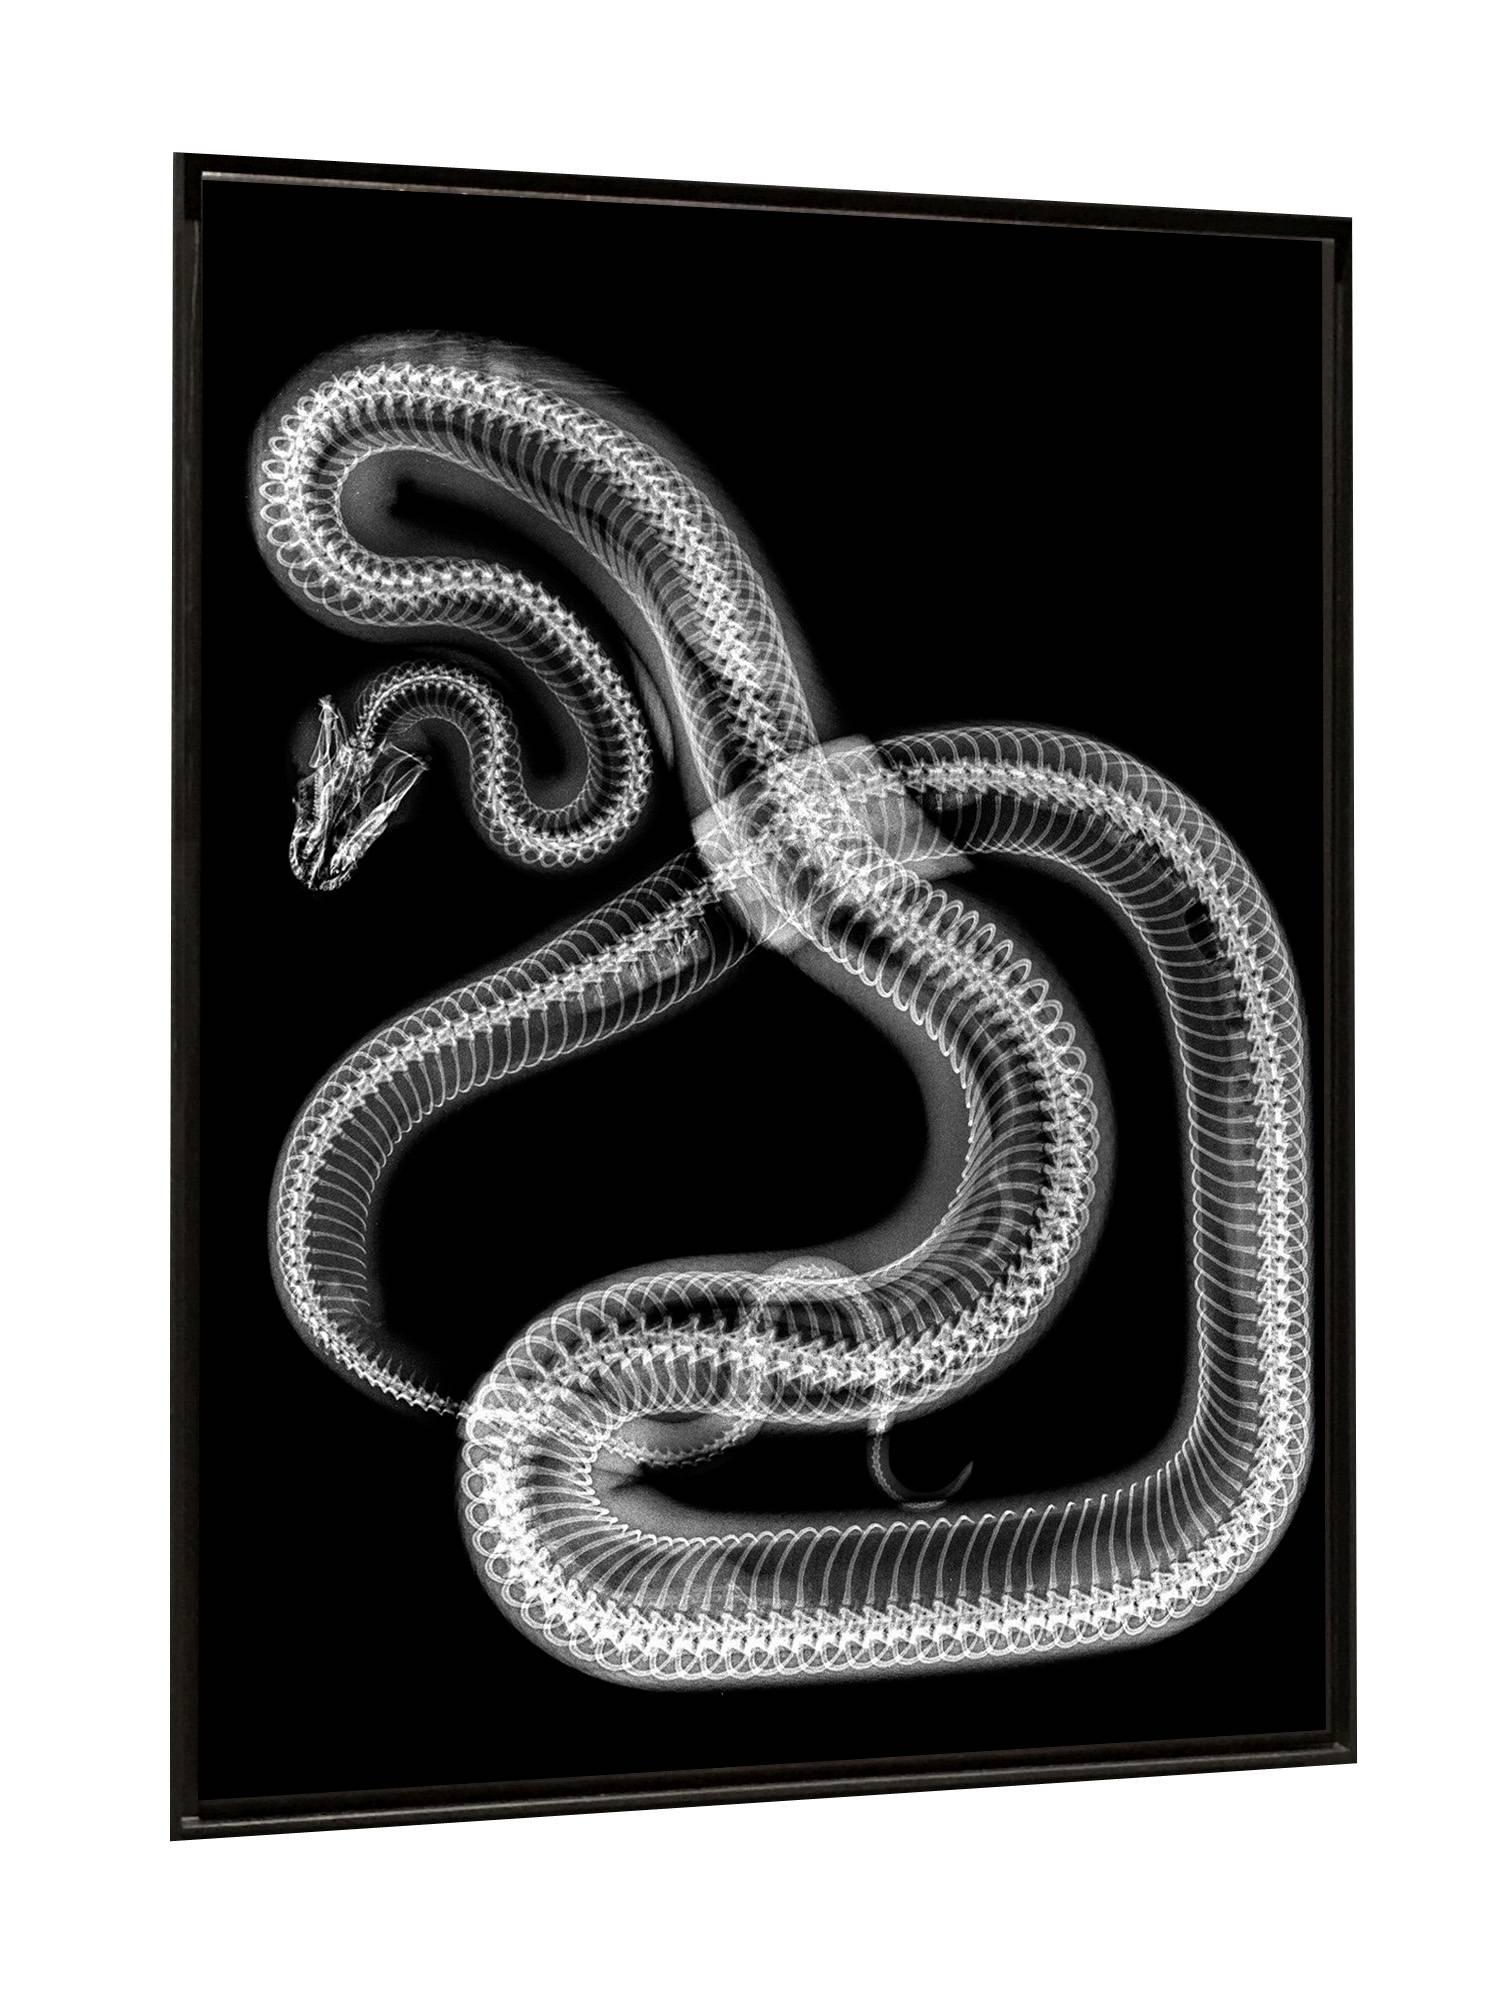 Snake - Photograph by Steve Miller